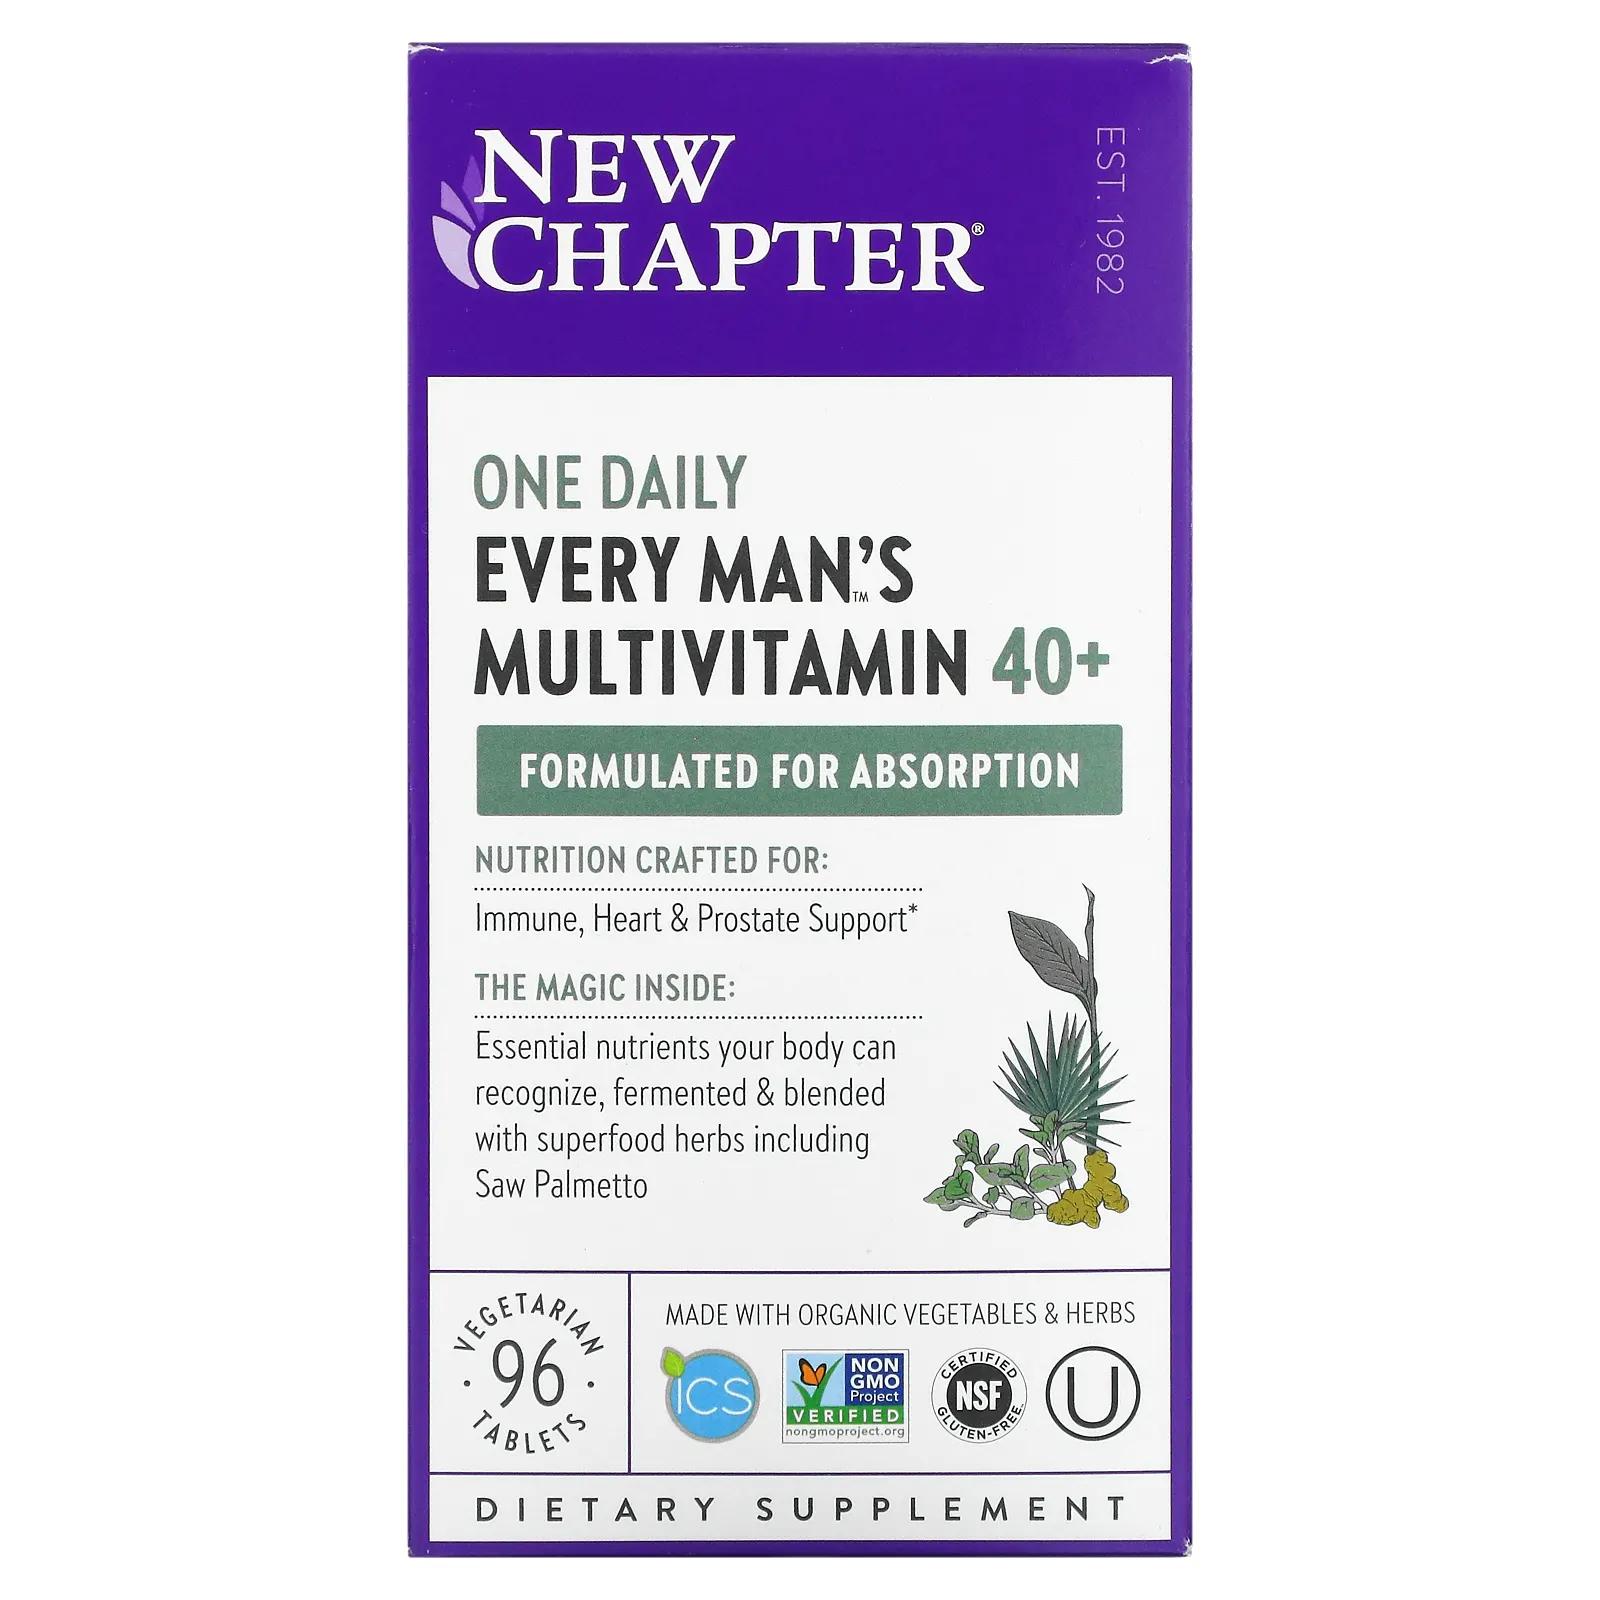 New Chapter Ежедневные мультивитамины Для каждого мужчины 40+ 96 таблеток new chapter мультивитамины для мужчин одна таблетка в день 96 таблеток